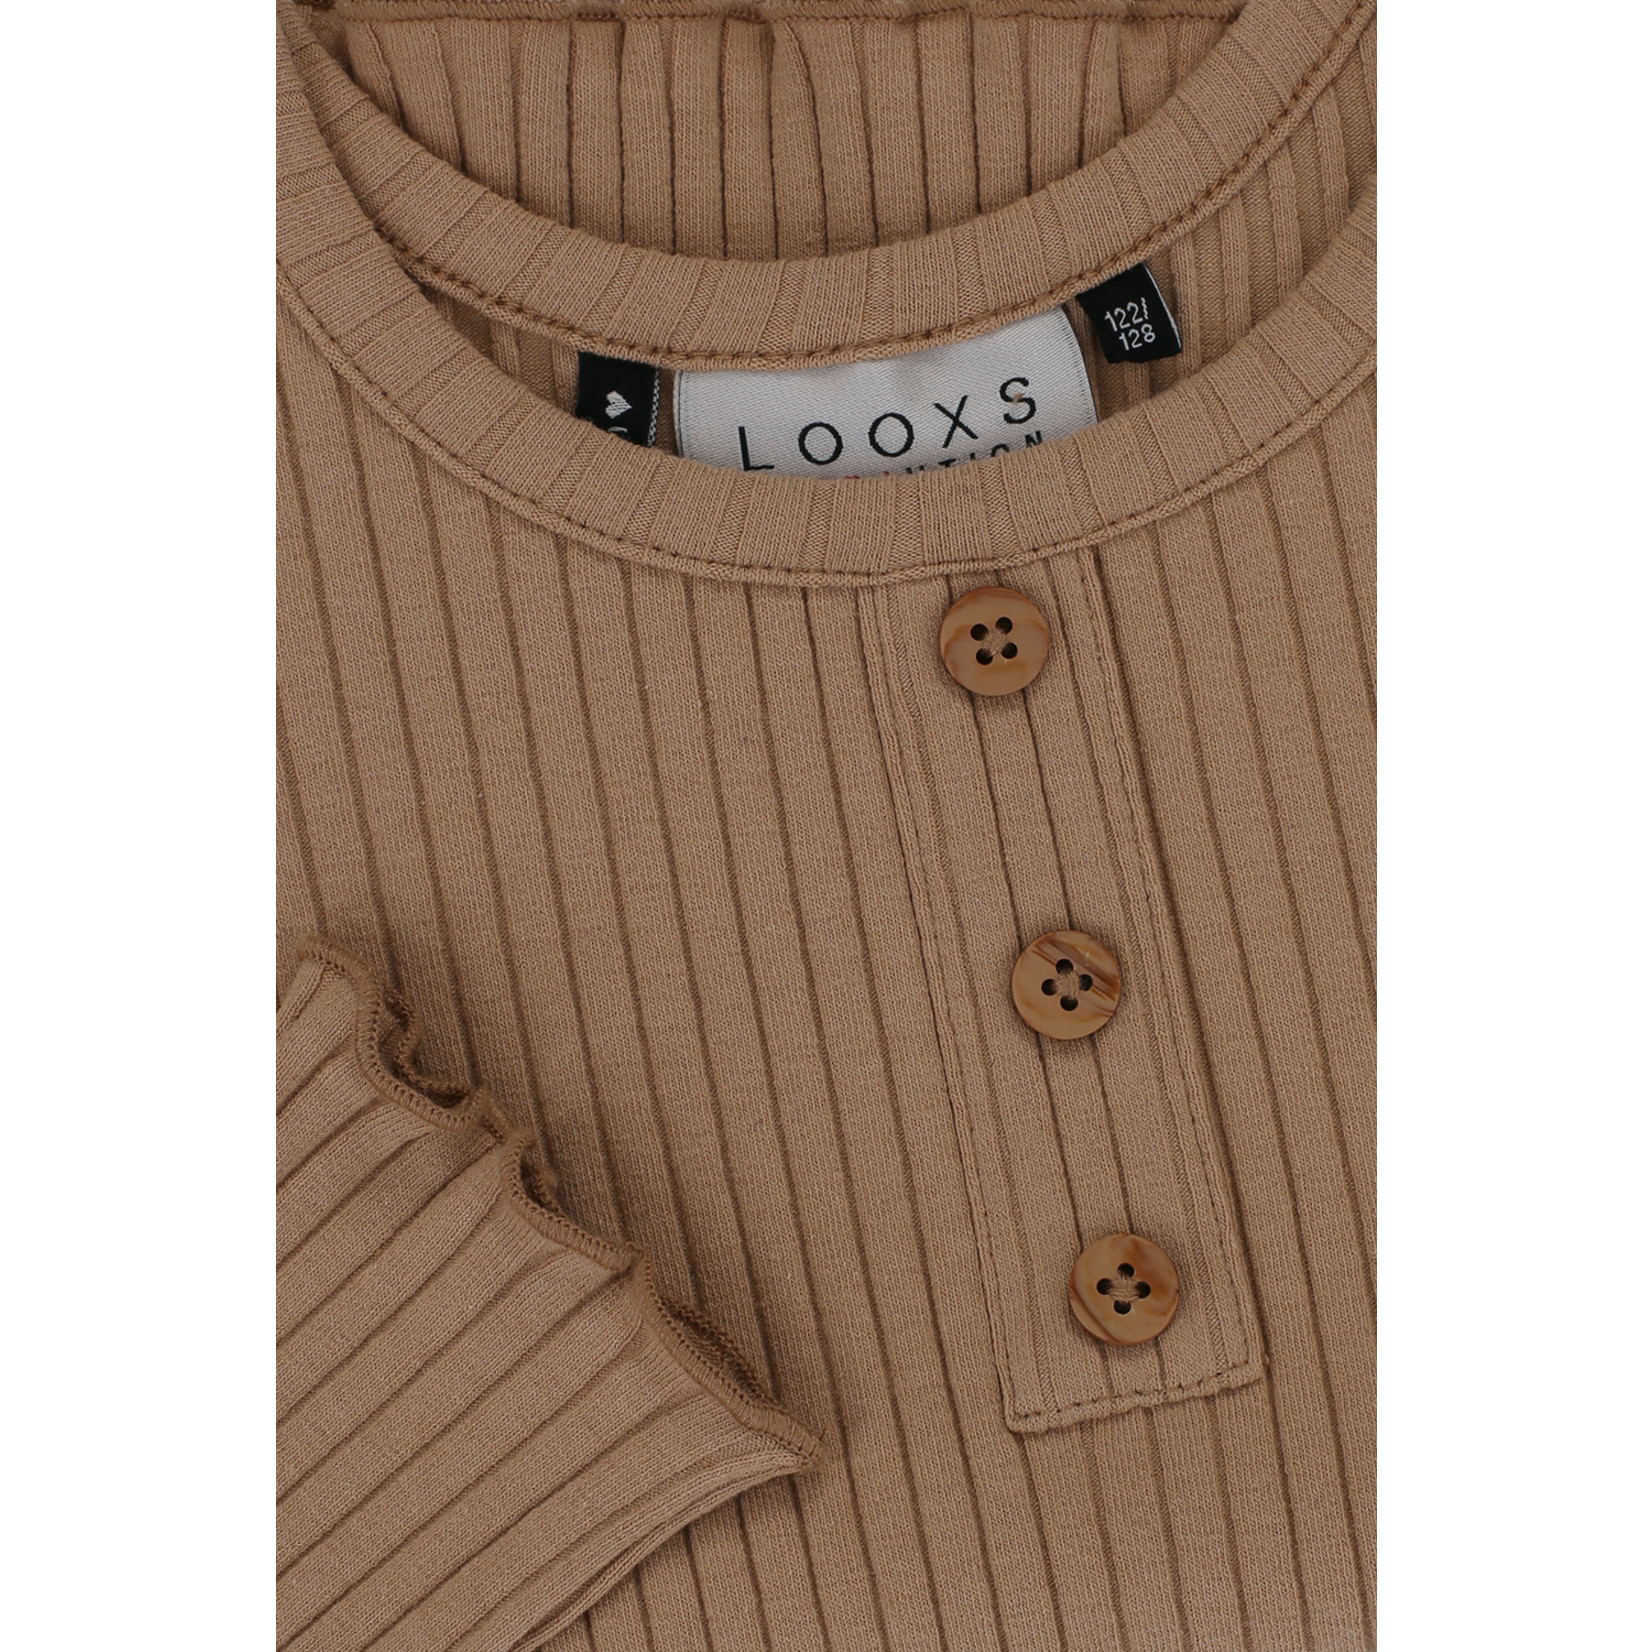 looxs 2211-5404 Rib T-Shirt